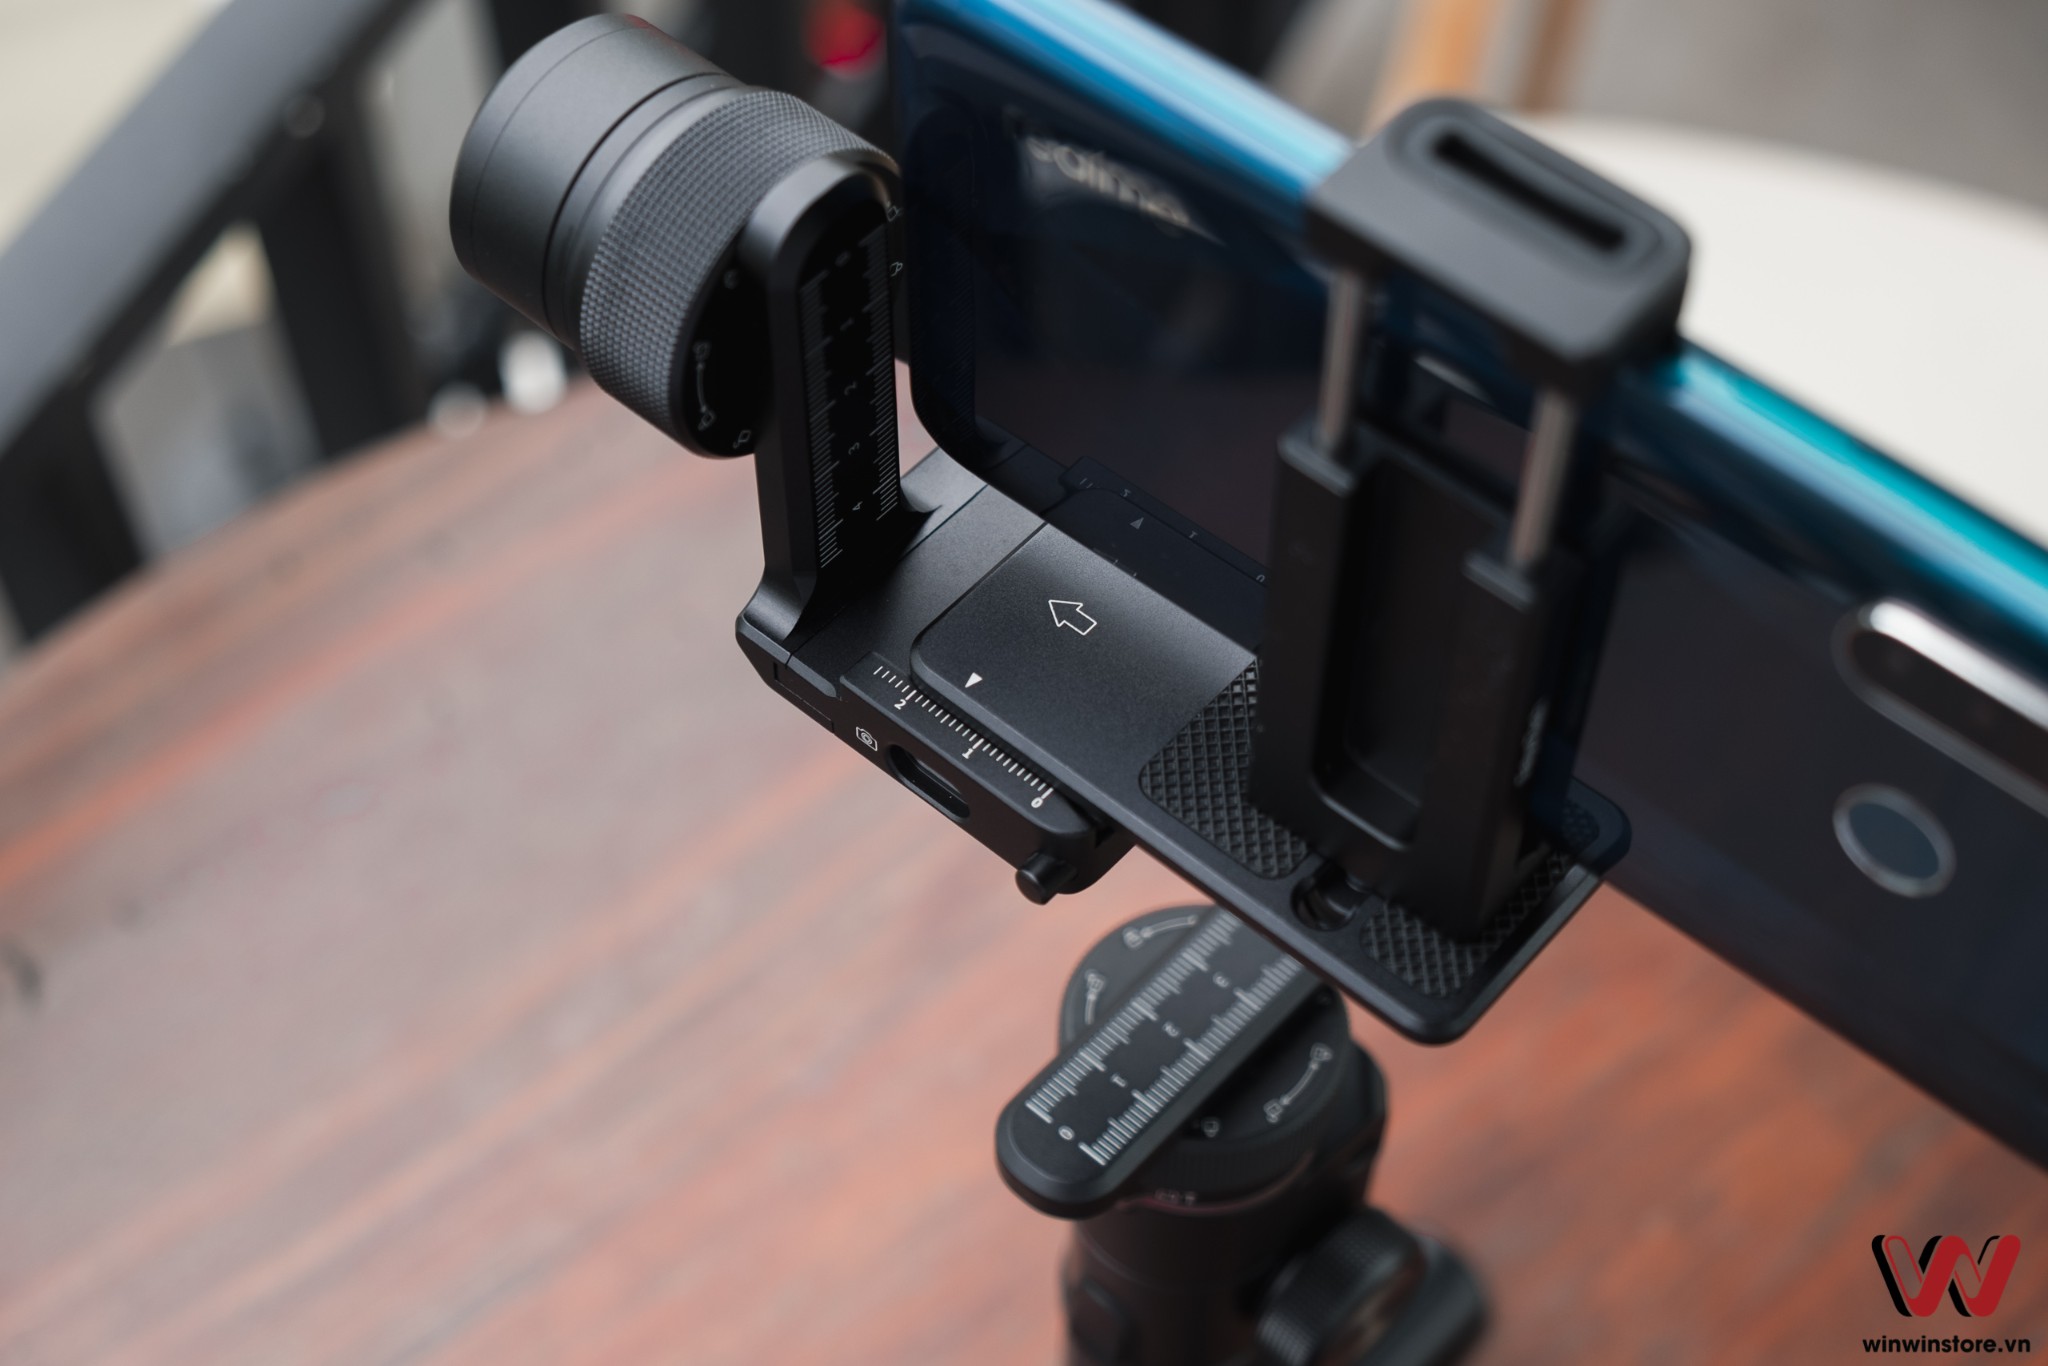 Trên tay gimbal FeiyuTech G6 Max: Nhỏ gọn và đa năng dùng được cho máy ảnh và điện thoại